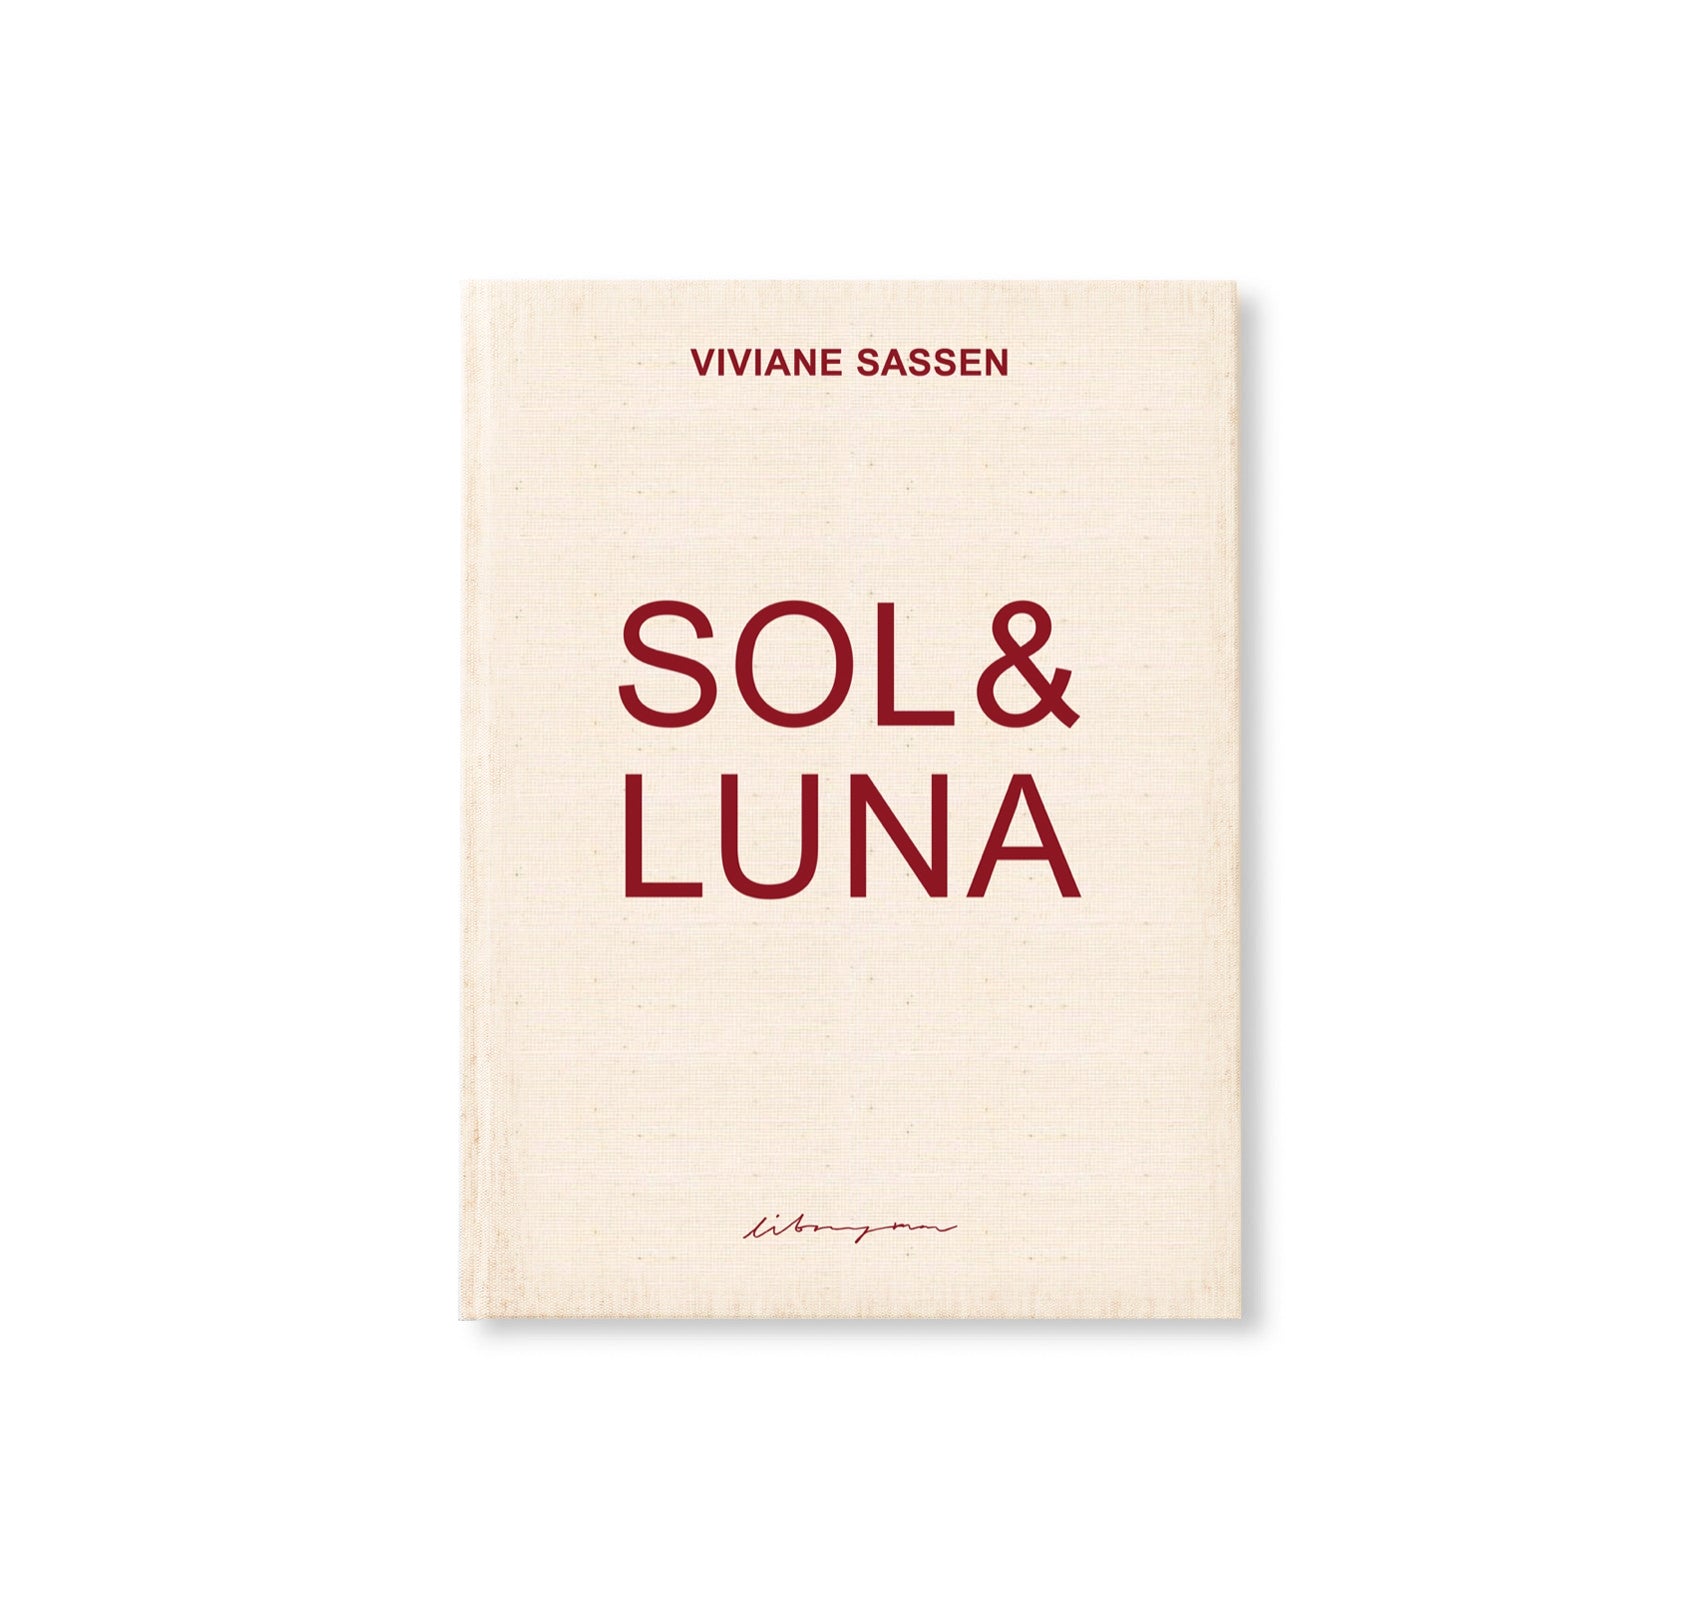 SOL & LUNA by Viviane Sassen [THIRD EDITION]